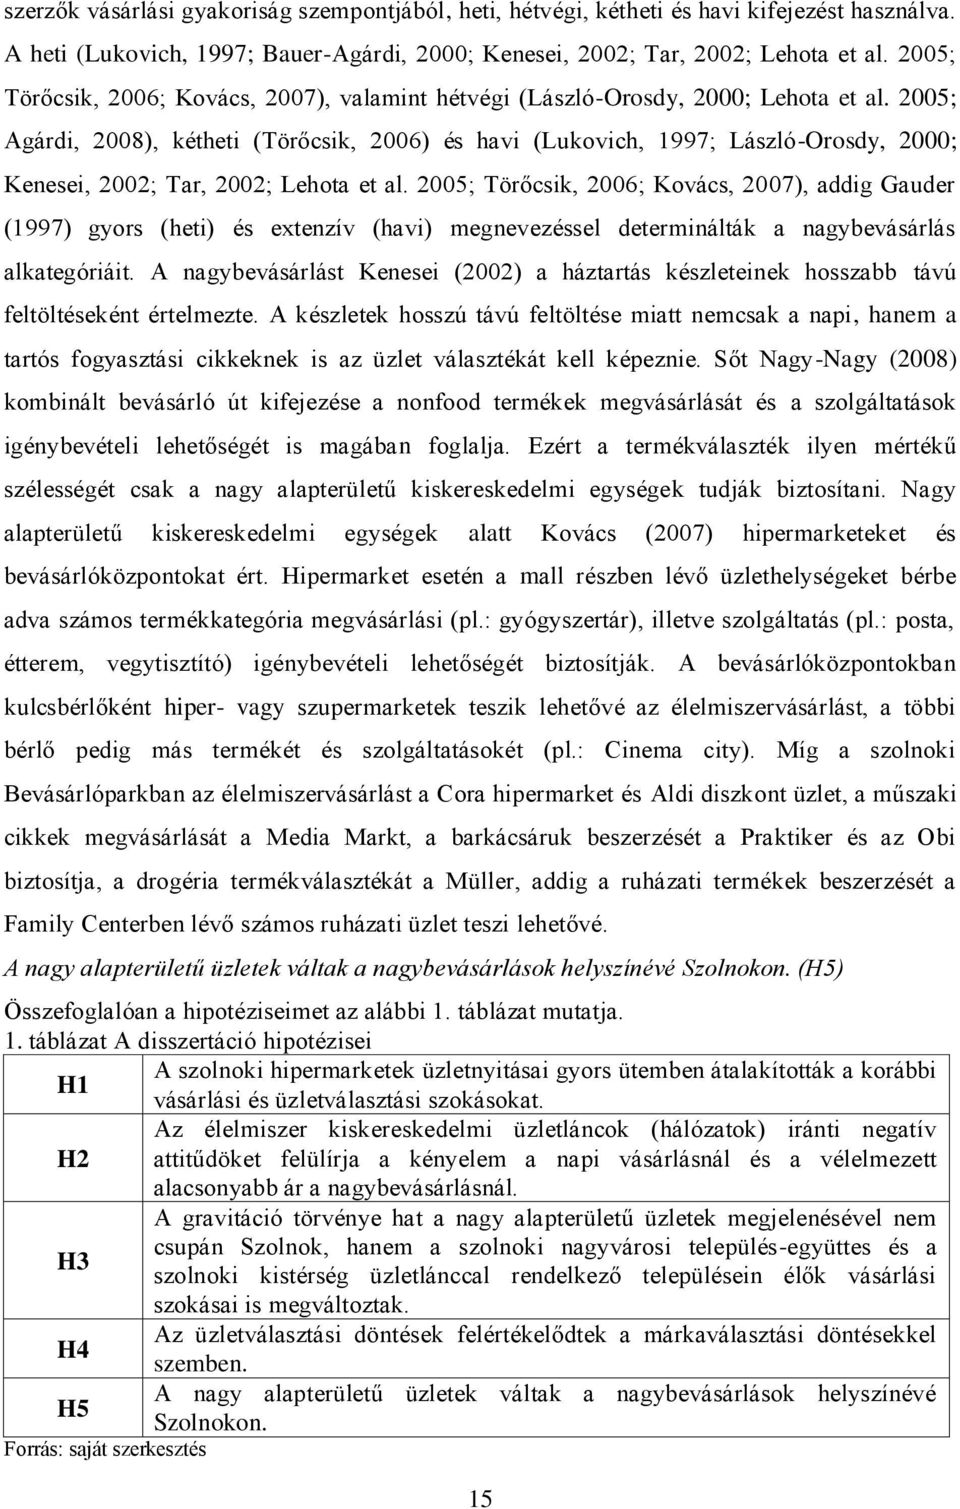 2005; Agárdi, 2008), kétheti (Törőcsik, 2006) és havi (Lukovich, 1997; László-Orosdy, 2000; Kenesei, 2002; Tar, 2002; Lehota et al.